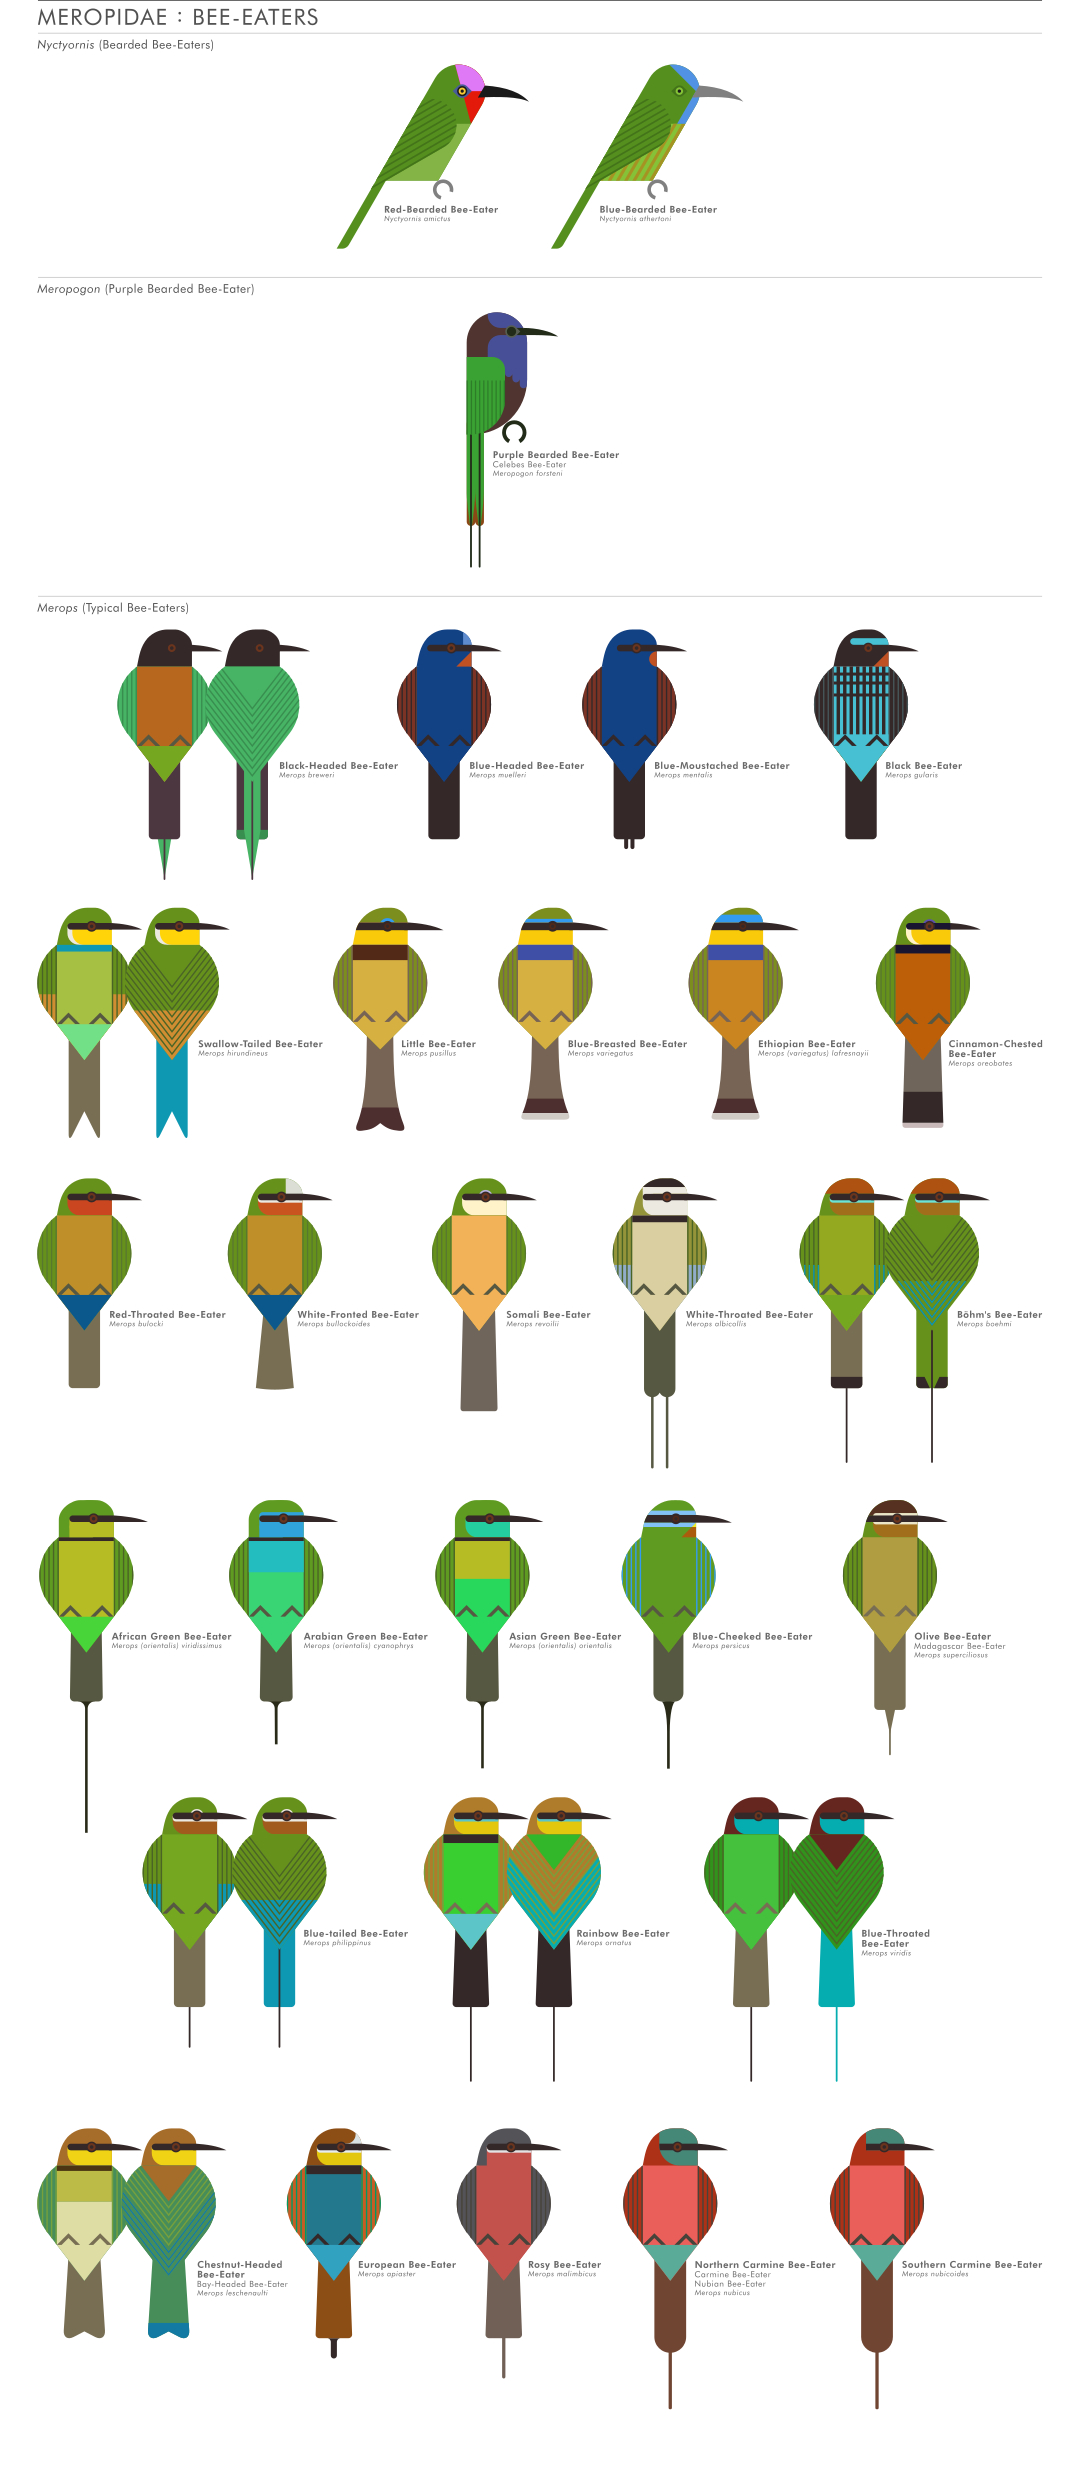 scott partridge - ave - avian vector encyclopedia - beeeaters CORACIIFORMES- bird vector art